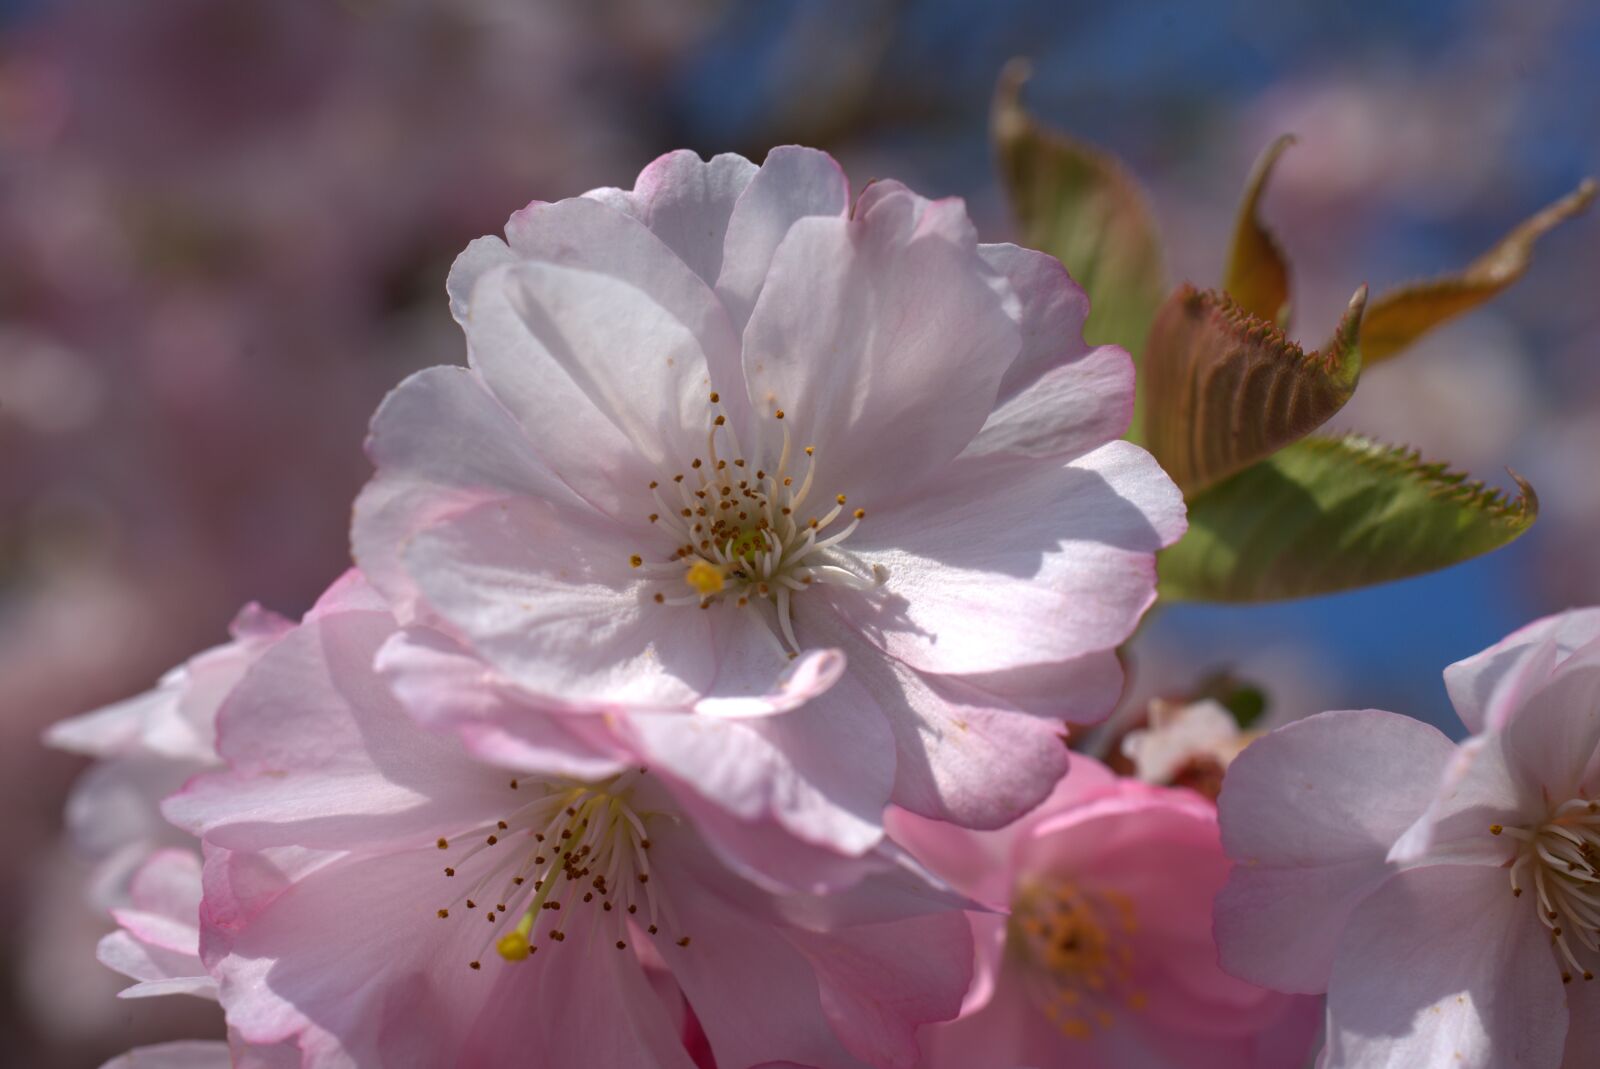 Sony a7 II + Sony FE 50mm F2.8 Macro sample photo. Cherry blossom, cherry, blossom photography